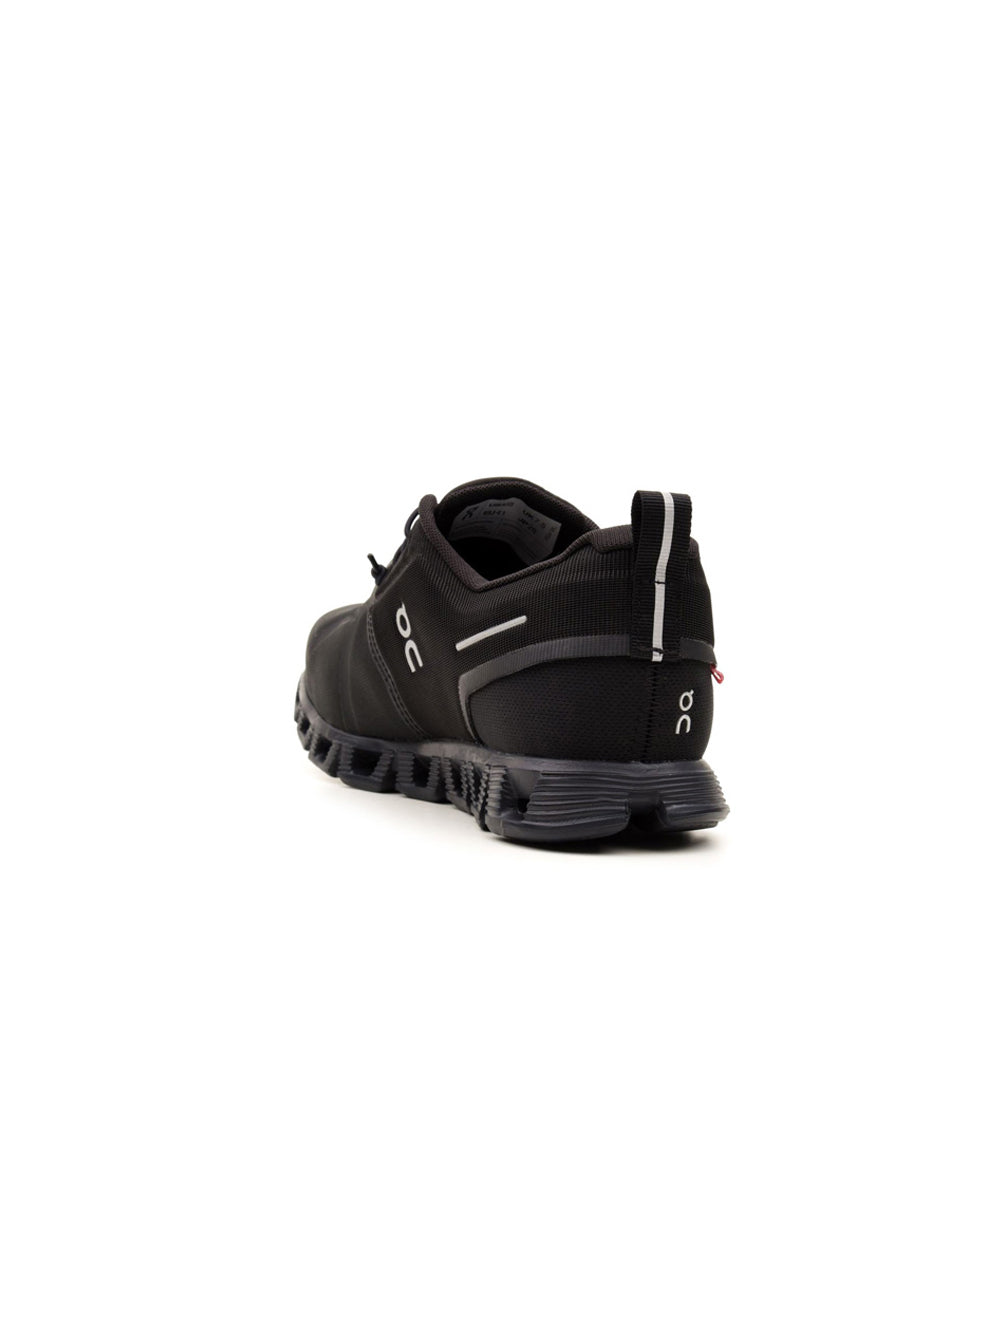 Sneakers Basse Uomo modello Cloud nero, On, retro